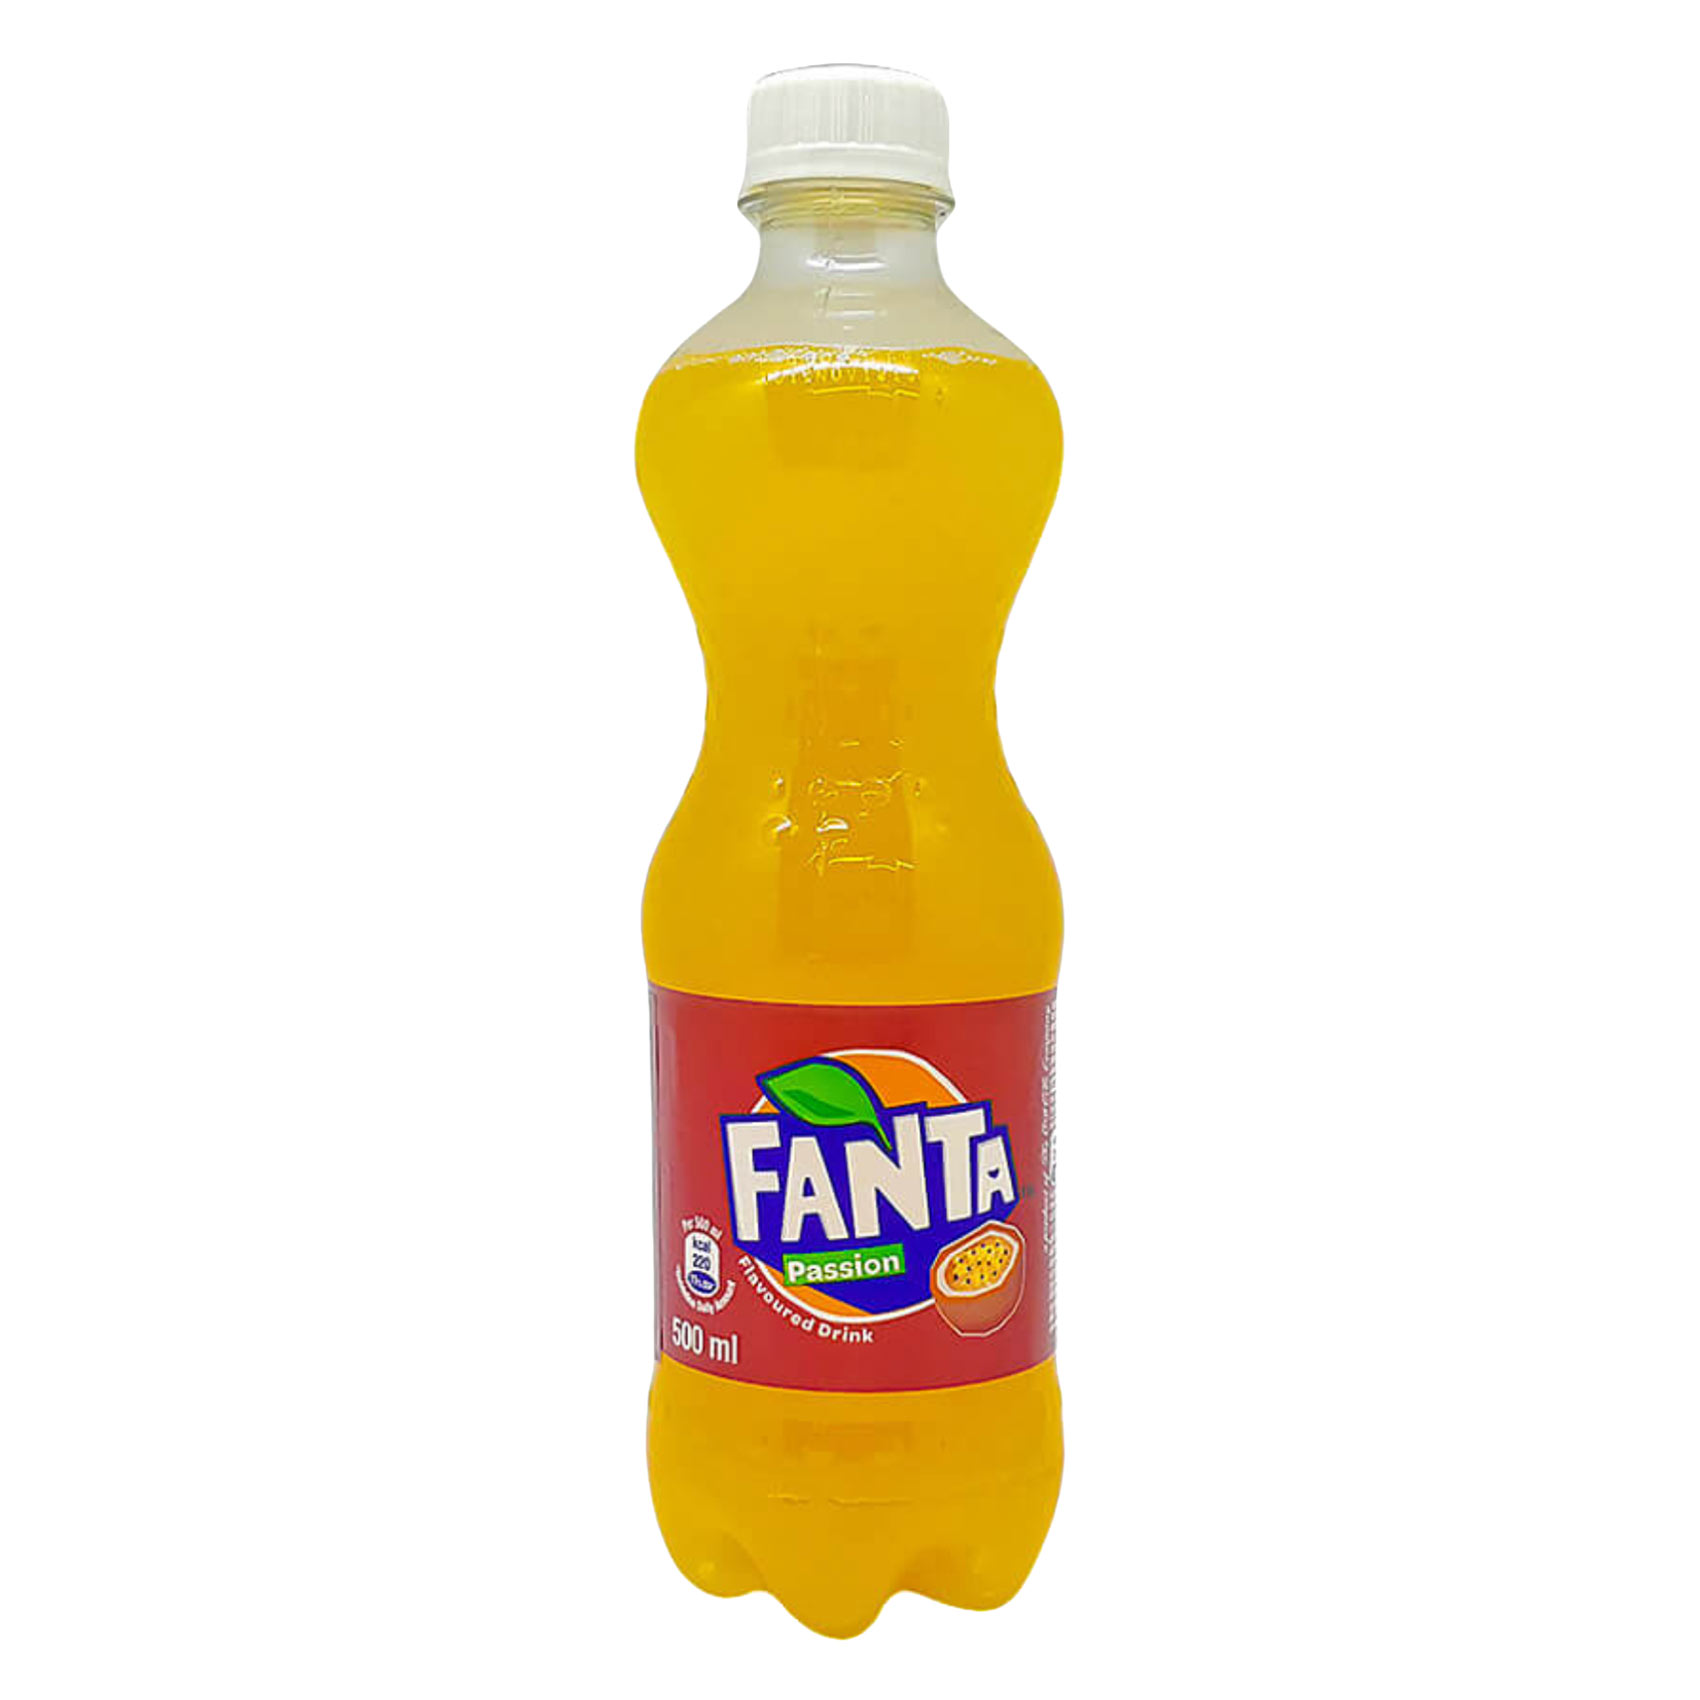 Fanta Passion soda 500ml